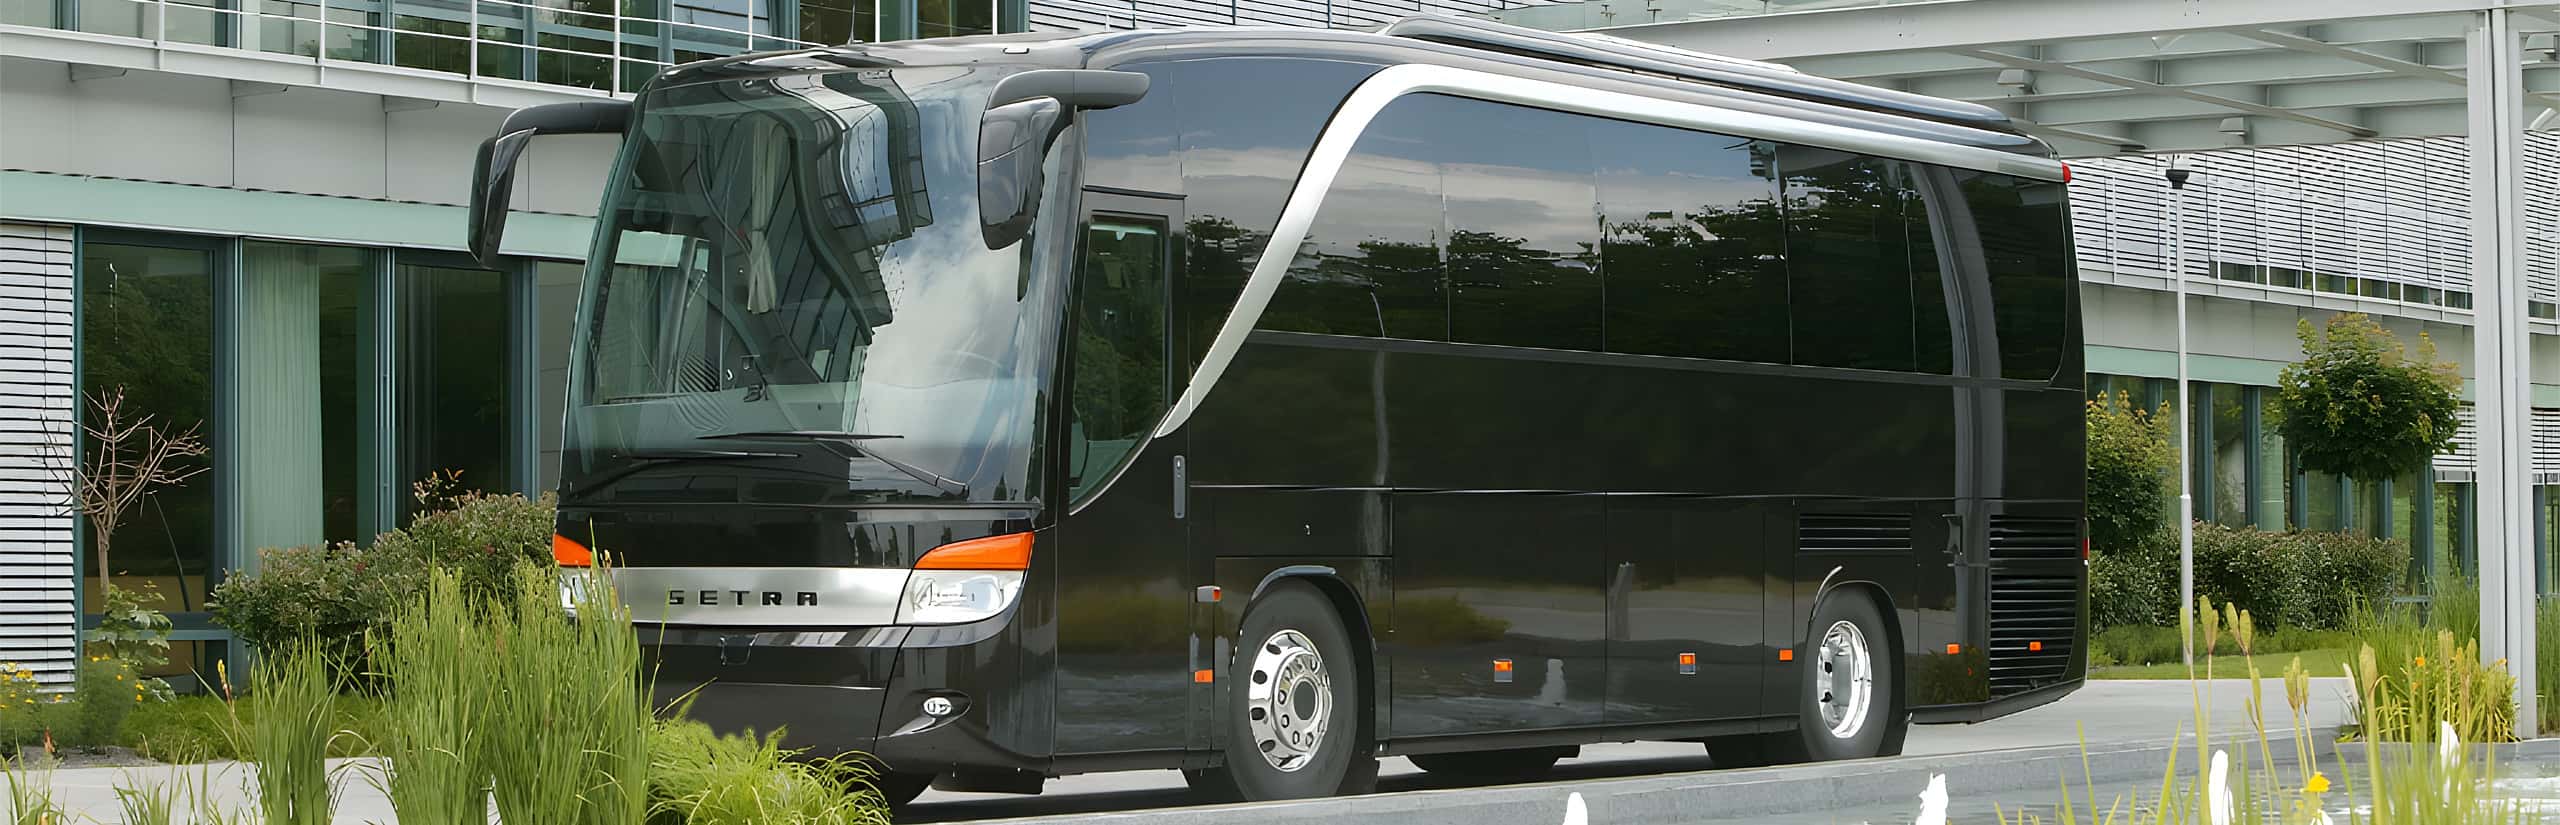 VIP bus luxury bus hire Frankfurt